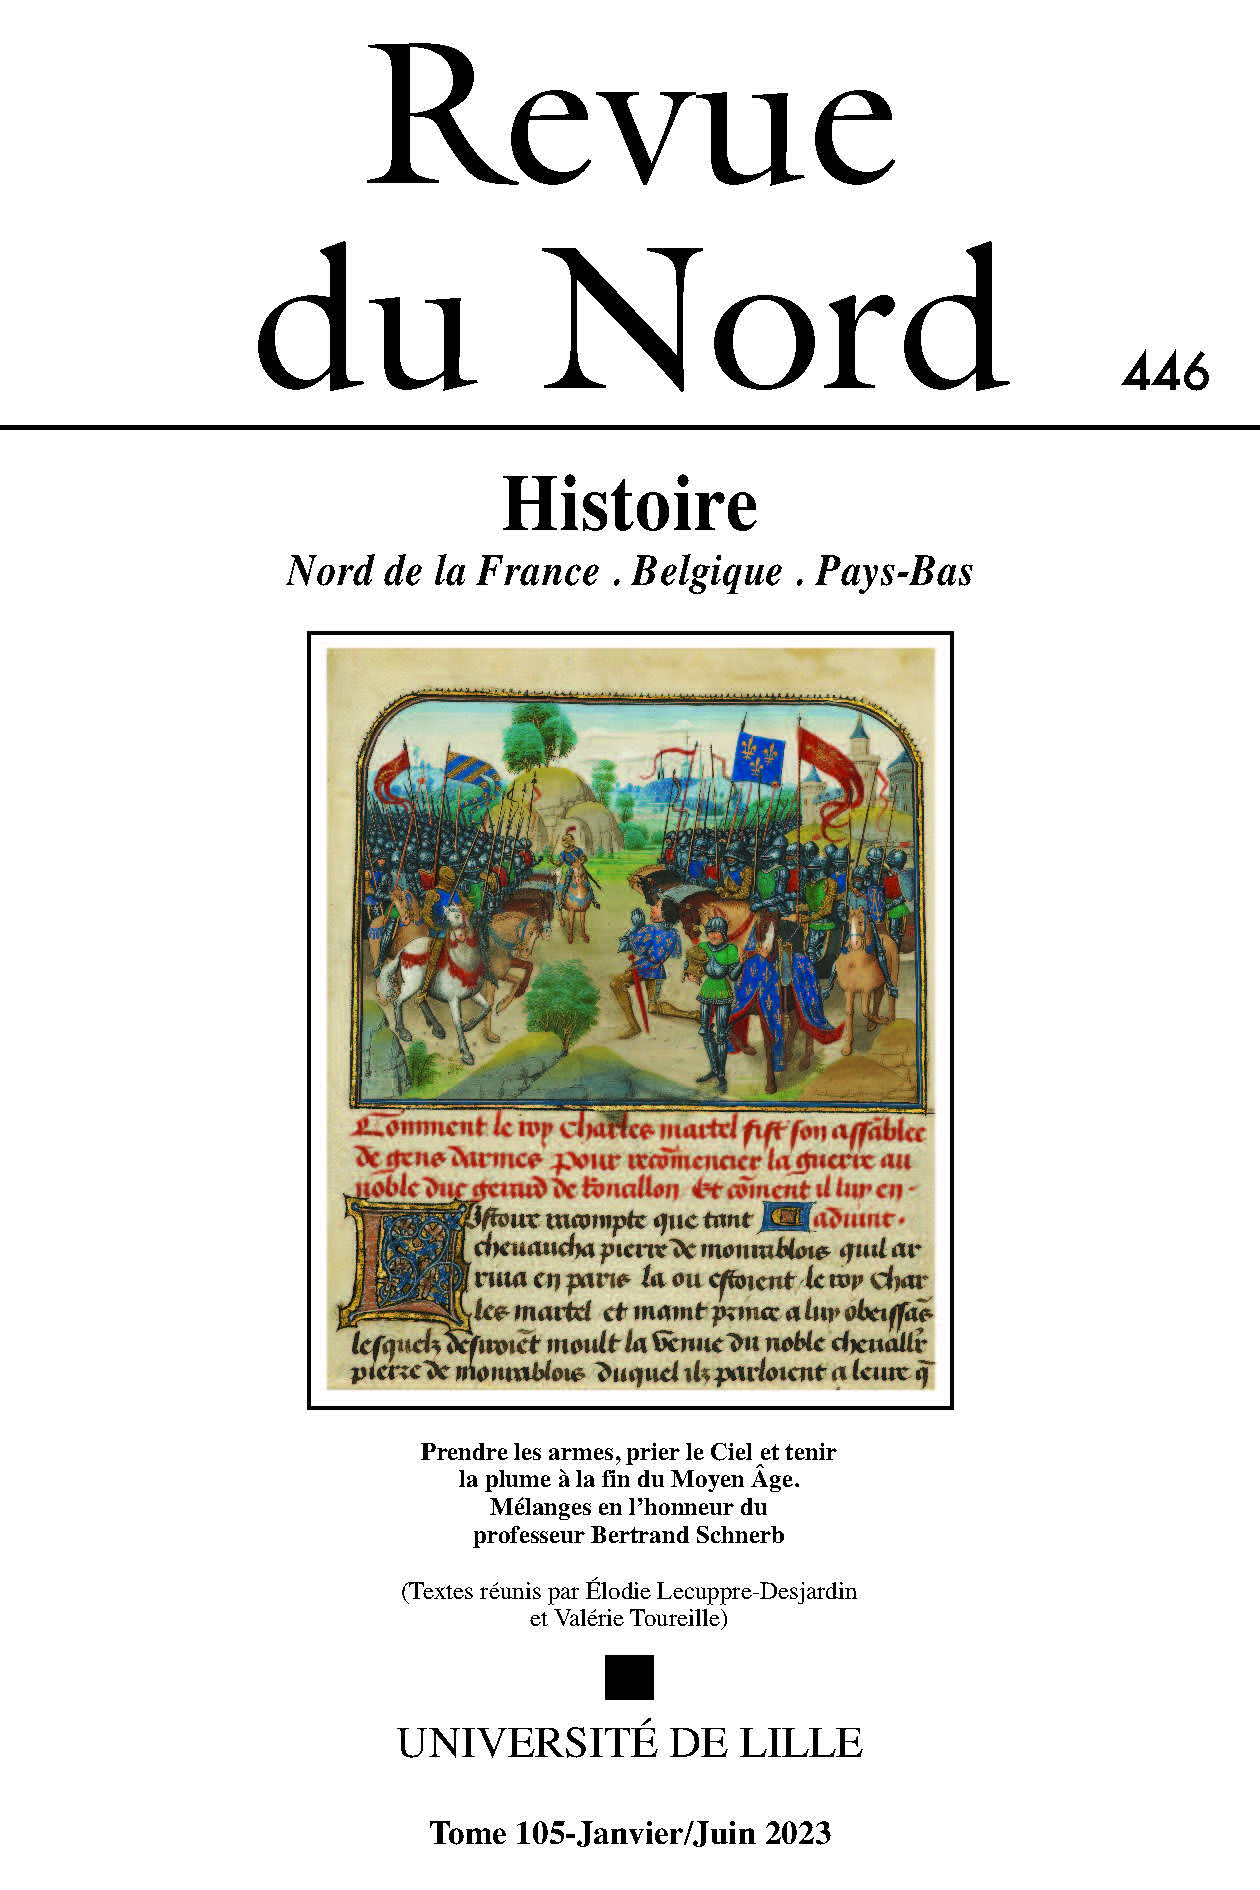 Revue du Nord Numéro 446 Histoire